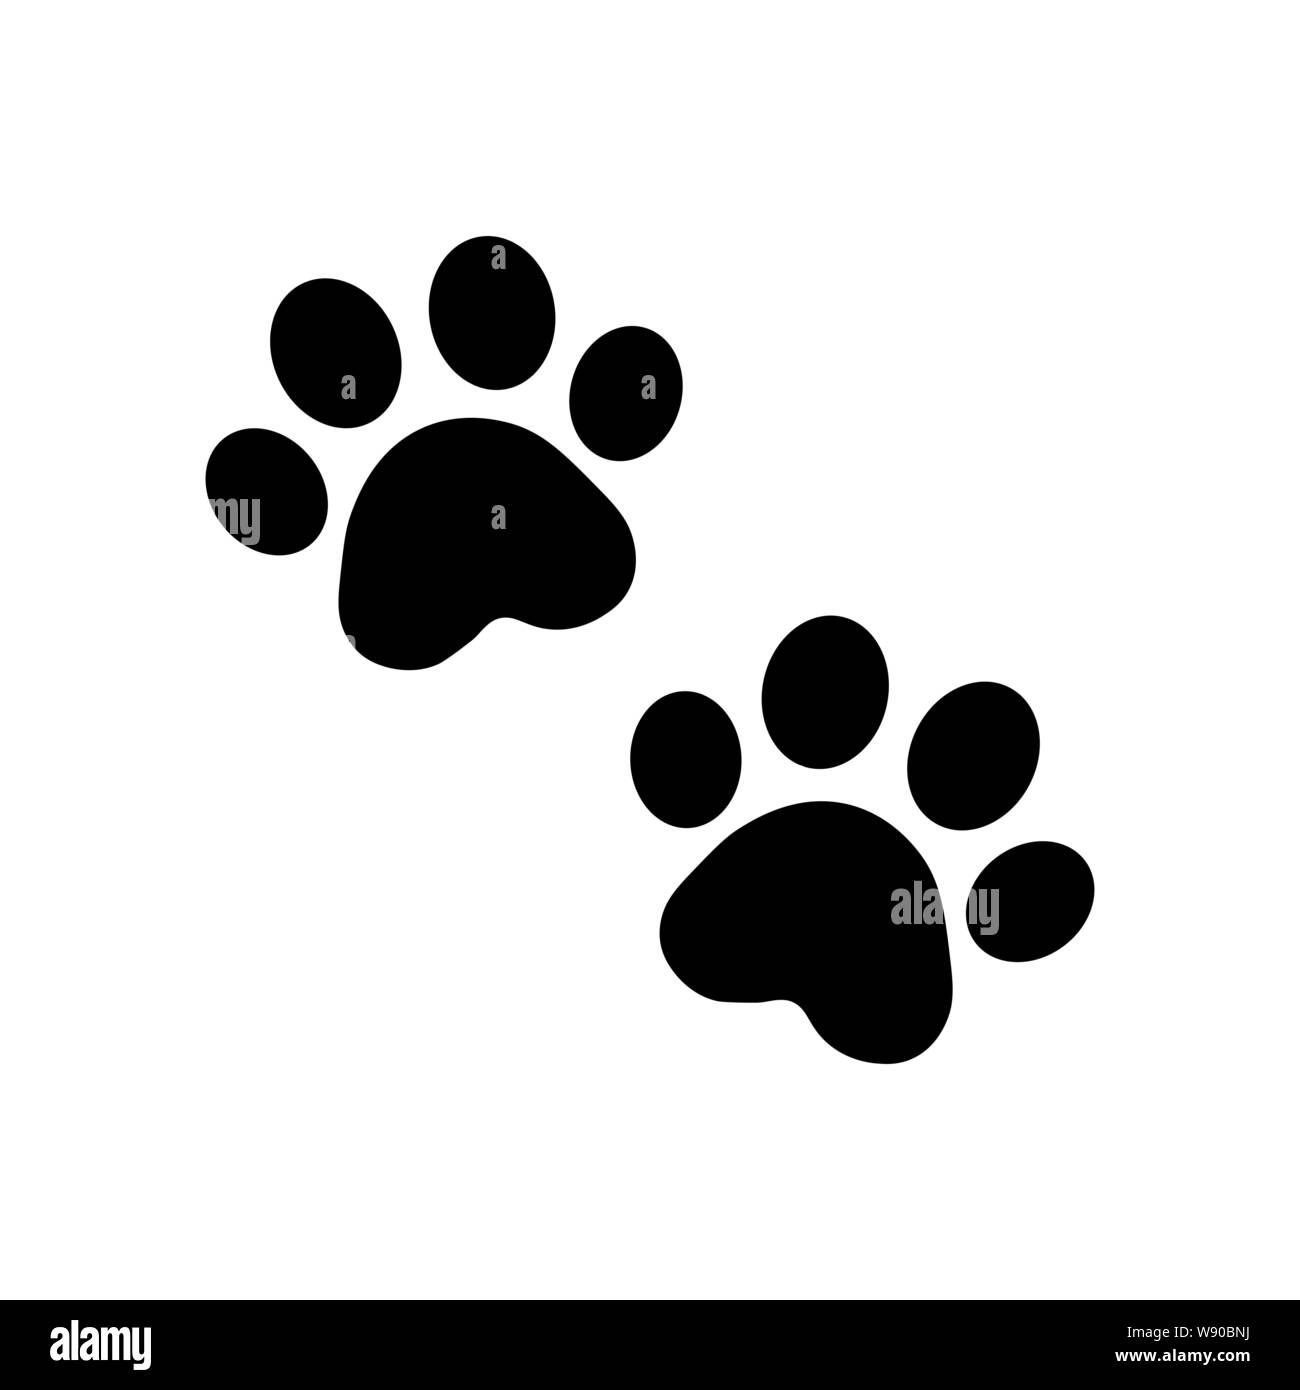 Zampa del cane vettore icona di impronta logo bulldog francese cucciolo  gatto gattino cartoon segno di simbolo illustrazione doodle - Vettore  Immagine e Vettoriale - Alamy